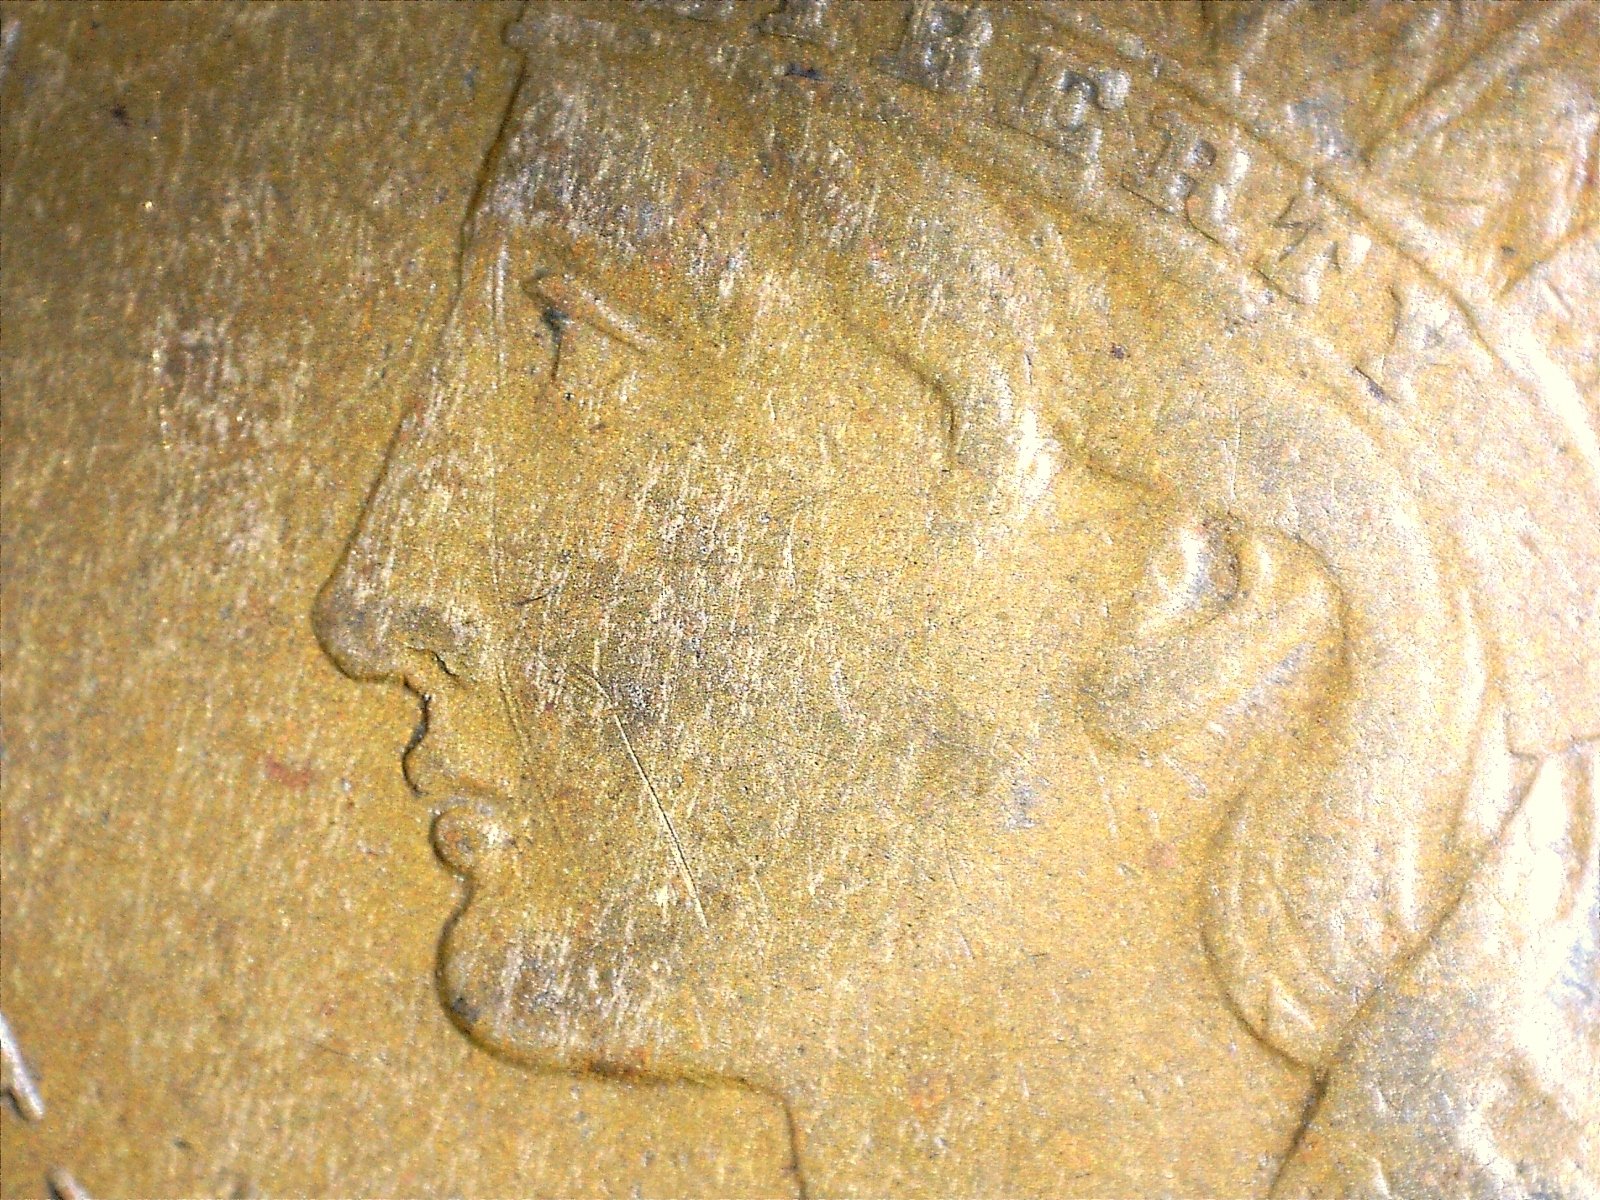 1867 ODD-001 - Indian Head Penny - Photo by David Killough